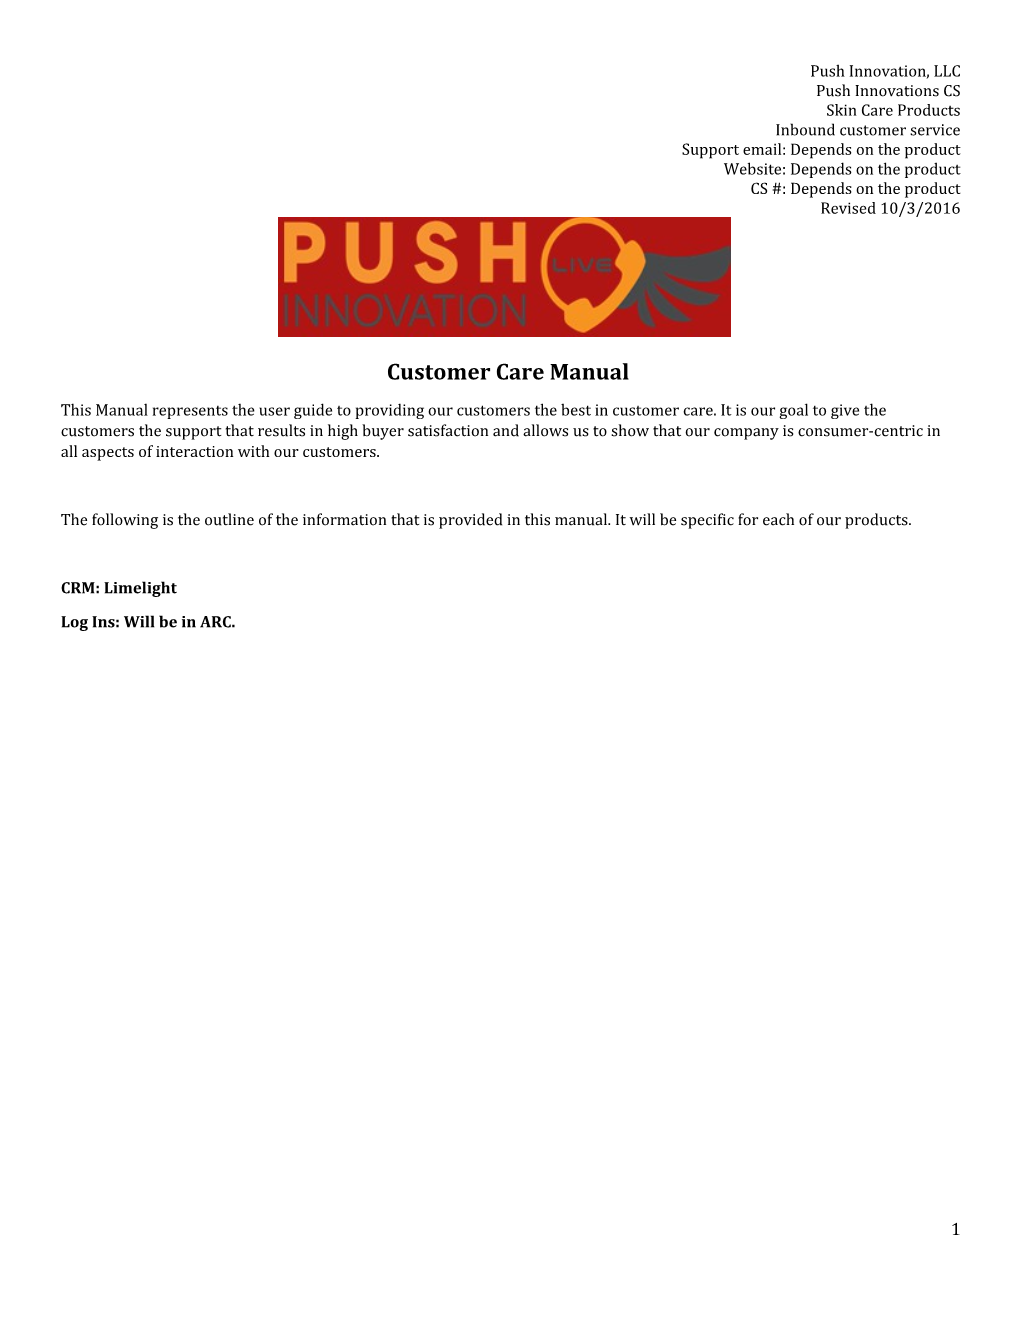 Push Innovation, LLC s1